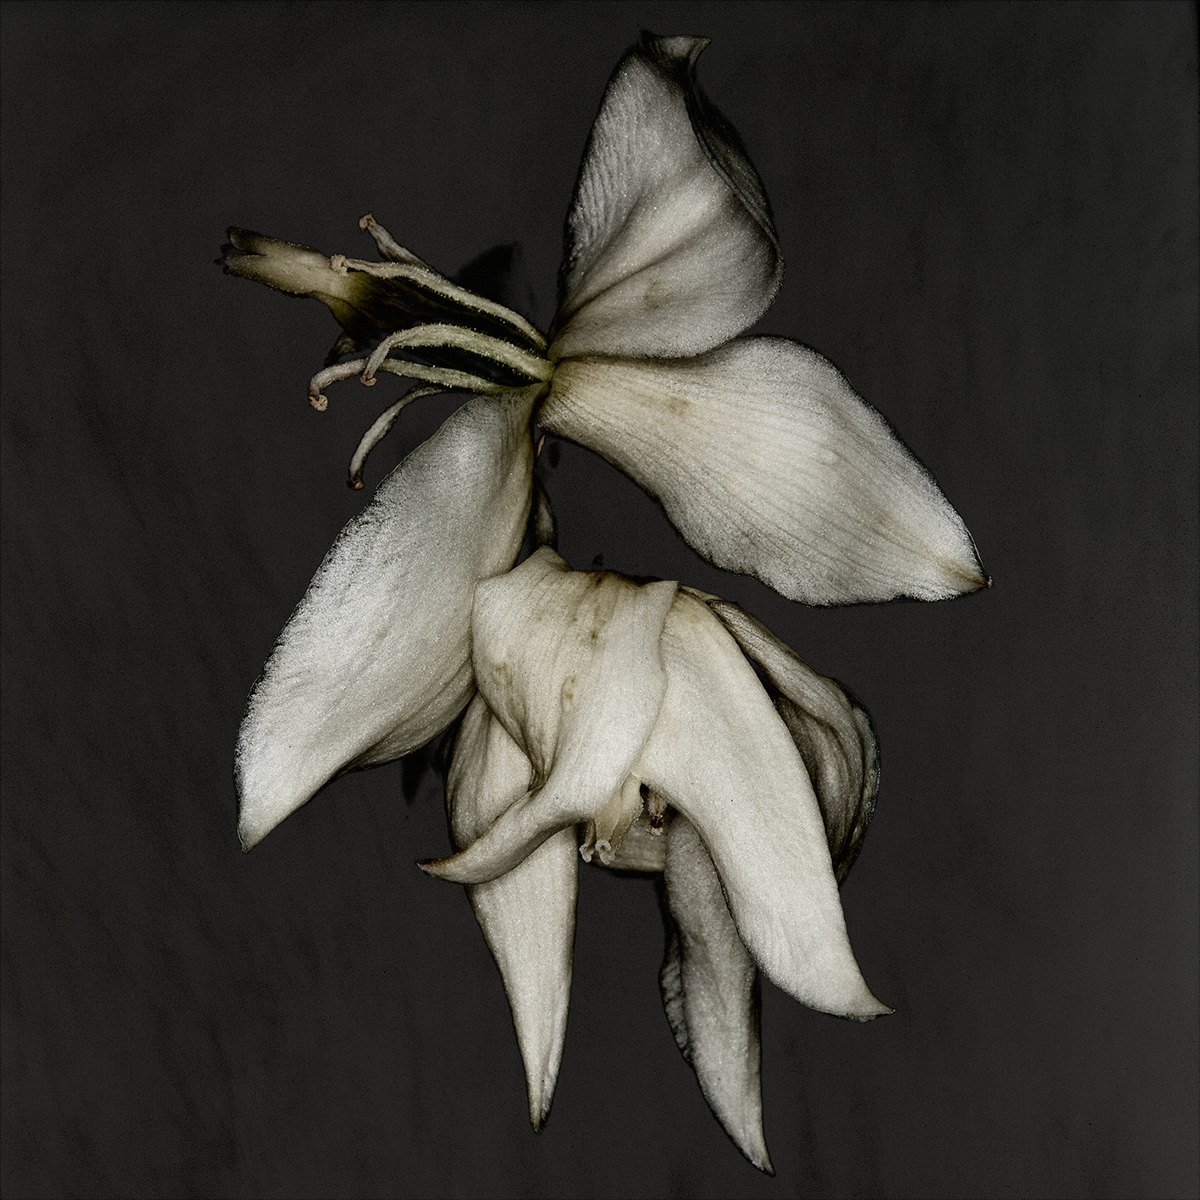 lily waterlily studio flower bloom macro carstenwitte gold